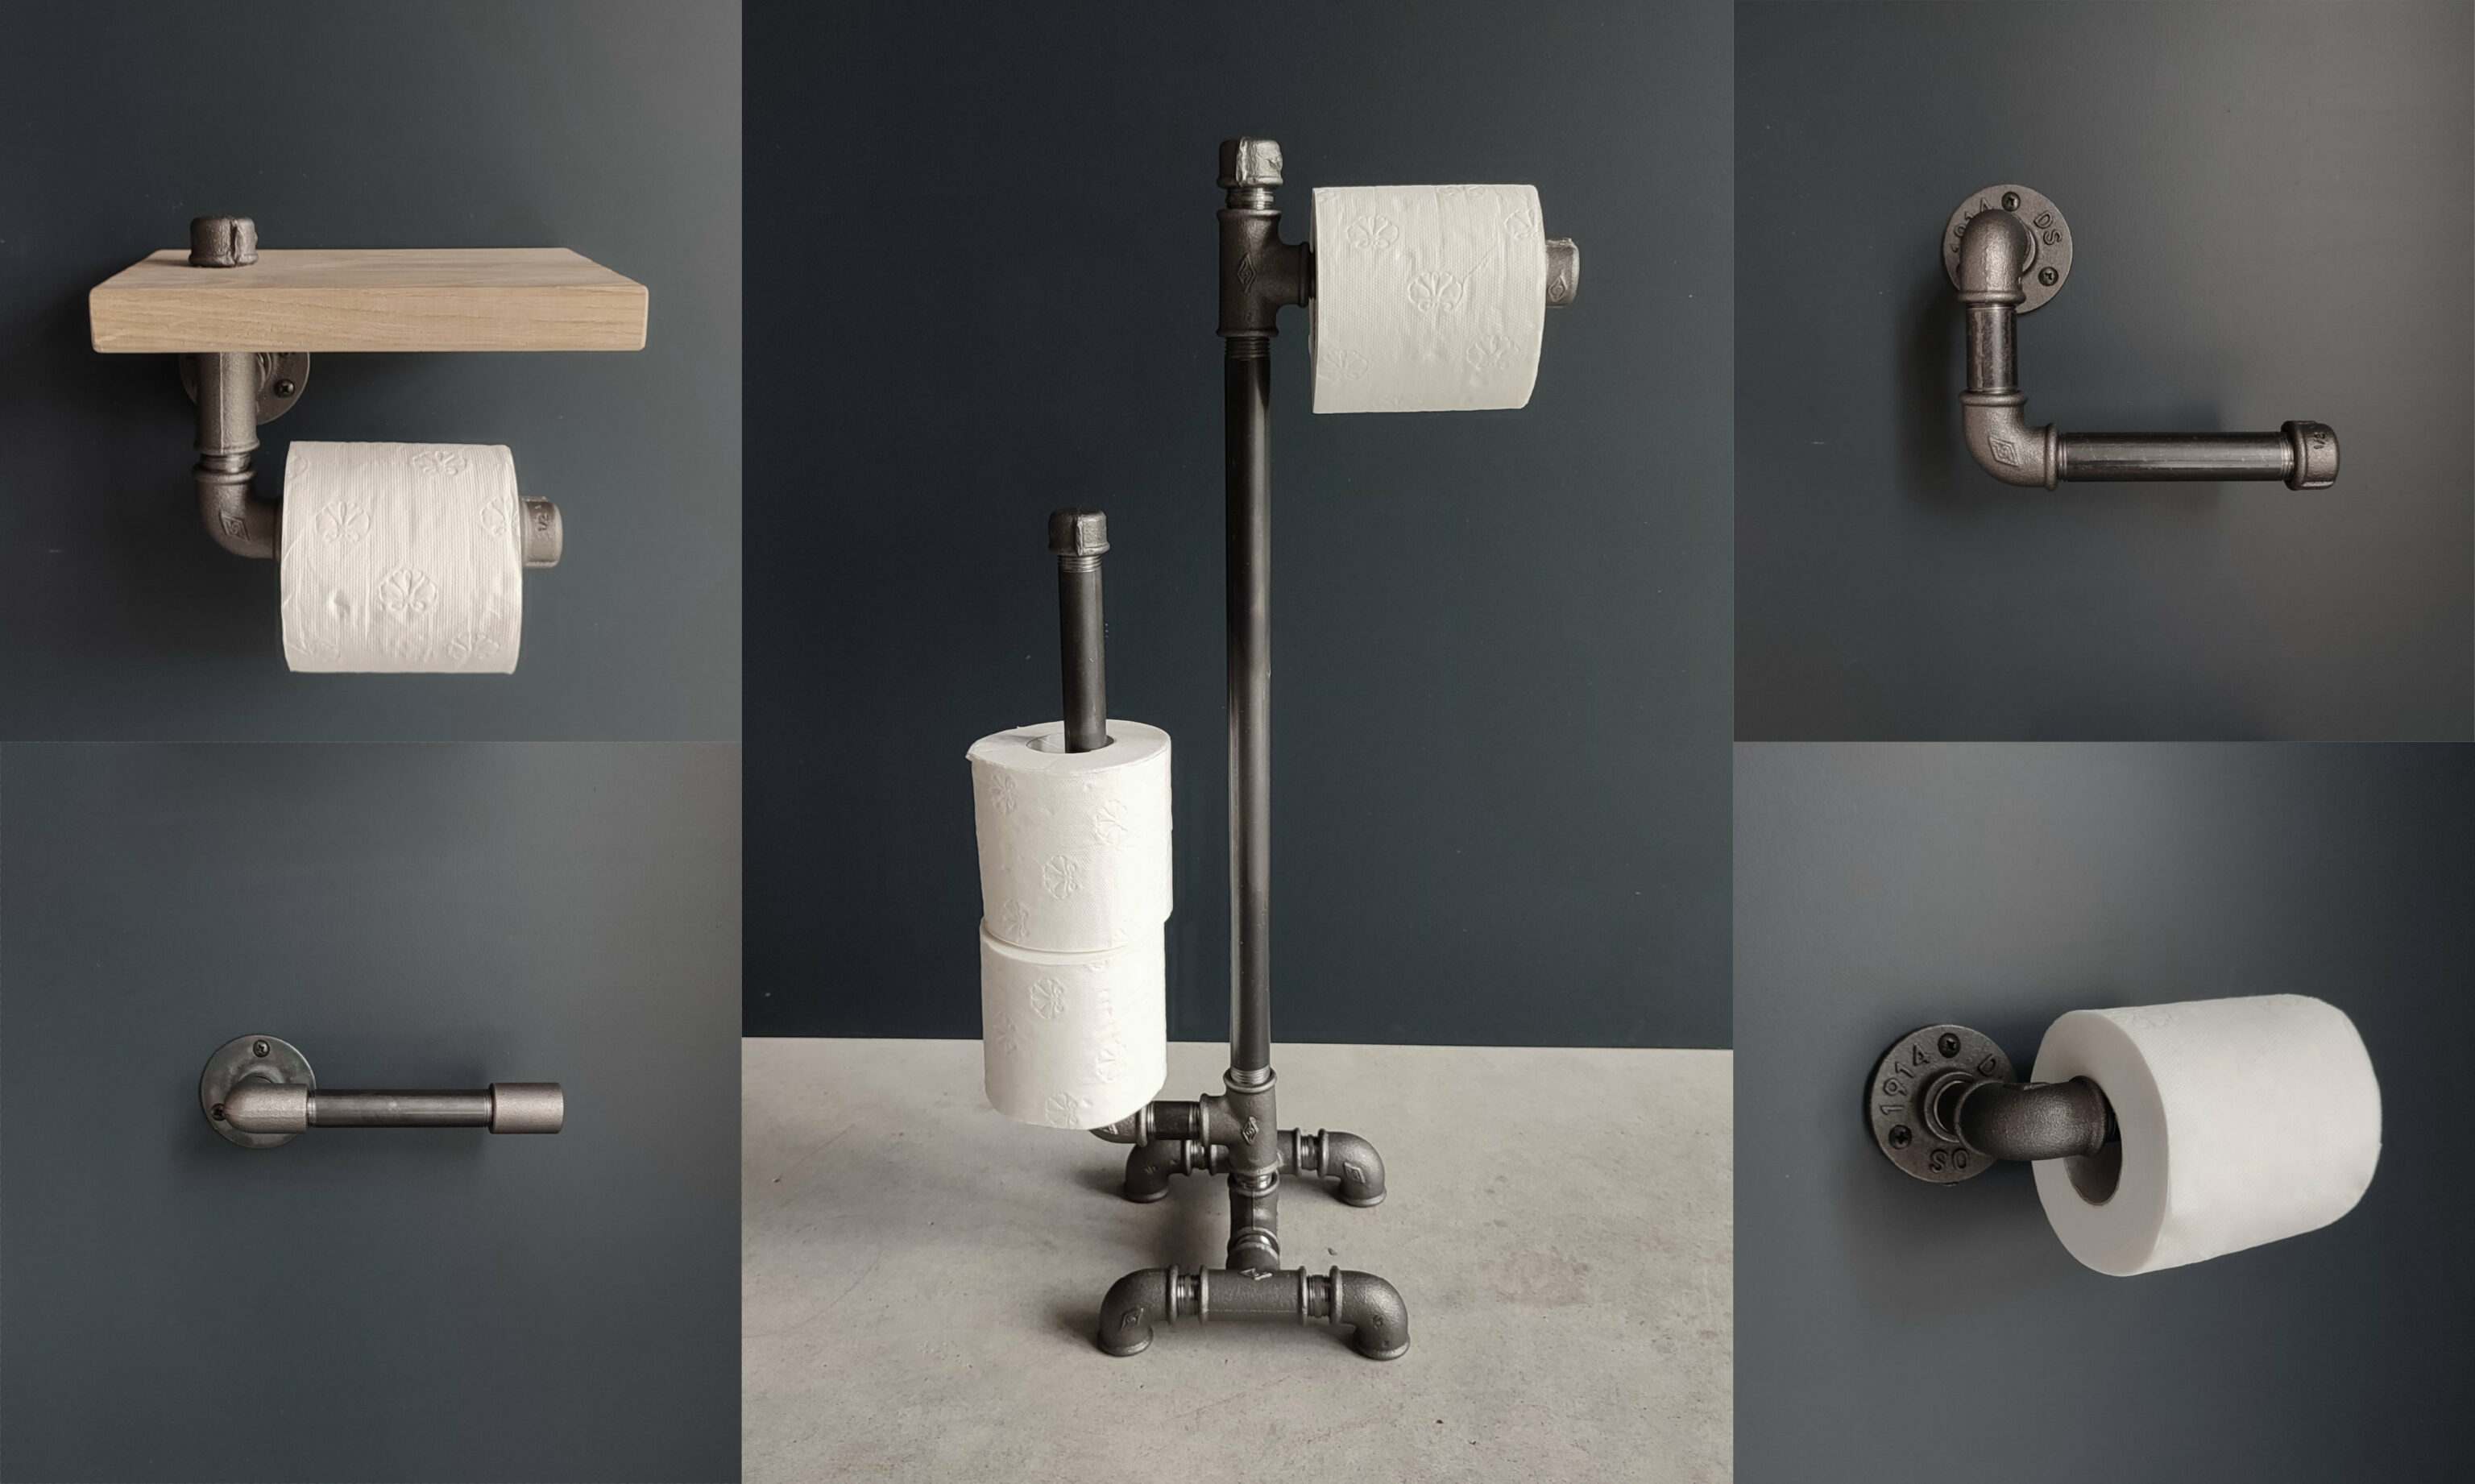 5 modellen van toiletpapierhouder te maken in industriële stijl voor uw kleine hoekje in sanitairdecoratie - Blog déco - MC Fact